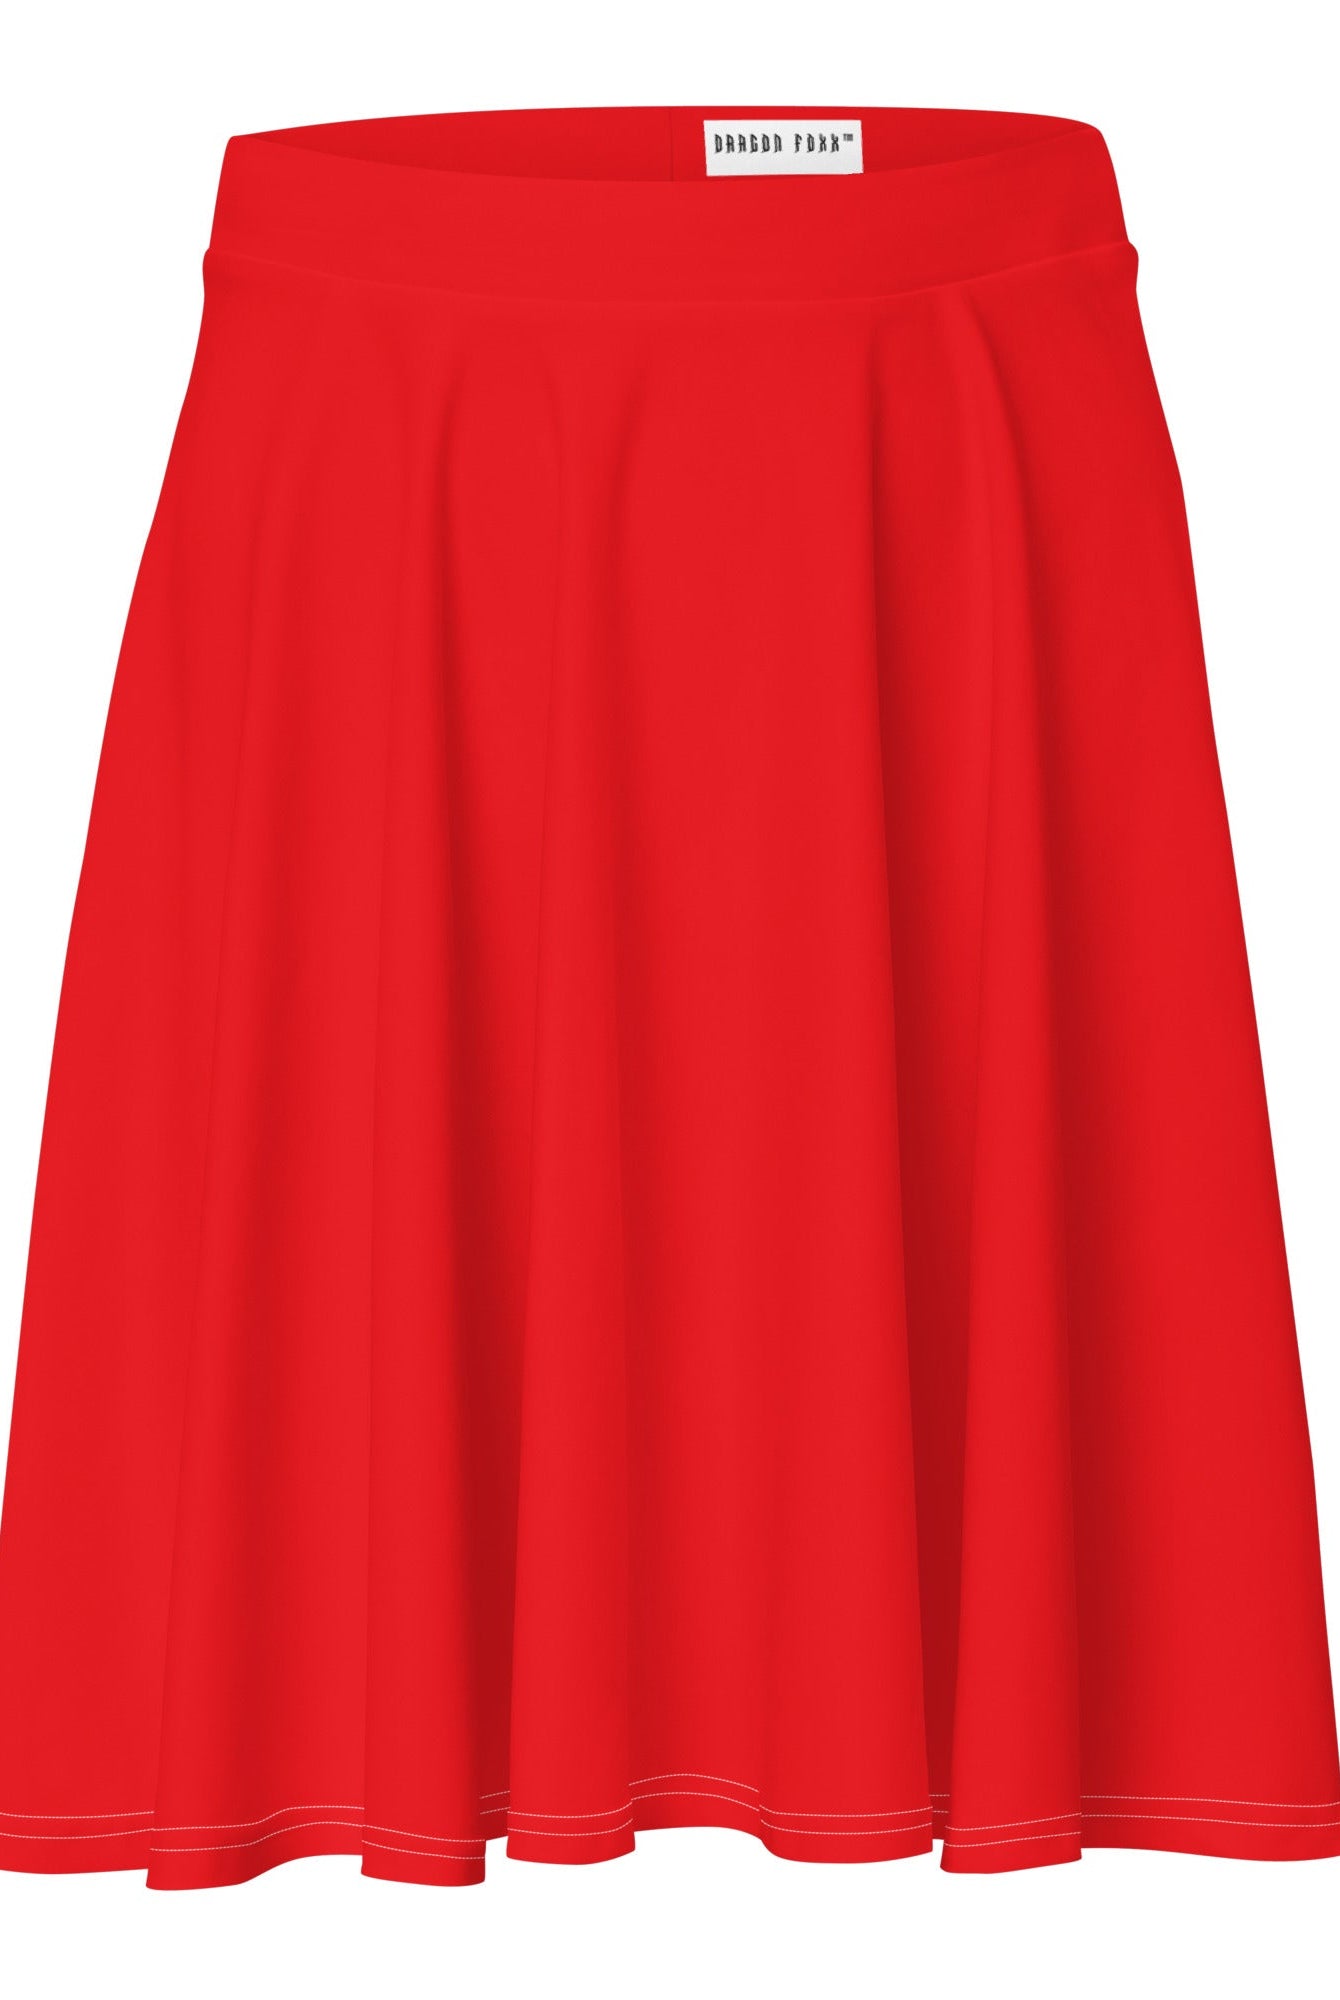 Red - Skater Skirt - Skater Skirt - DRAGON FOXX™ - Red - Skater Skirt - 8815871_9606 - XS - Red - Dragon Foxx™ - Dragon Foxx™ Red - Skater Skirt - Dragon Foxx™ Skater Skirt